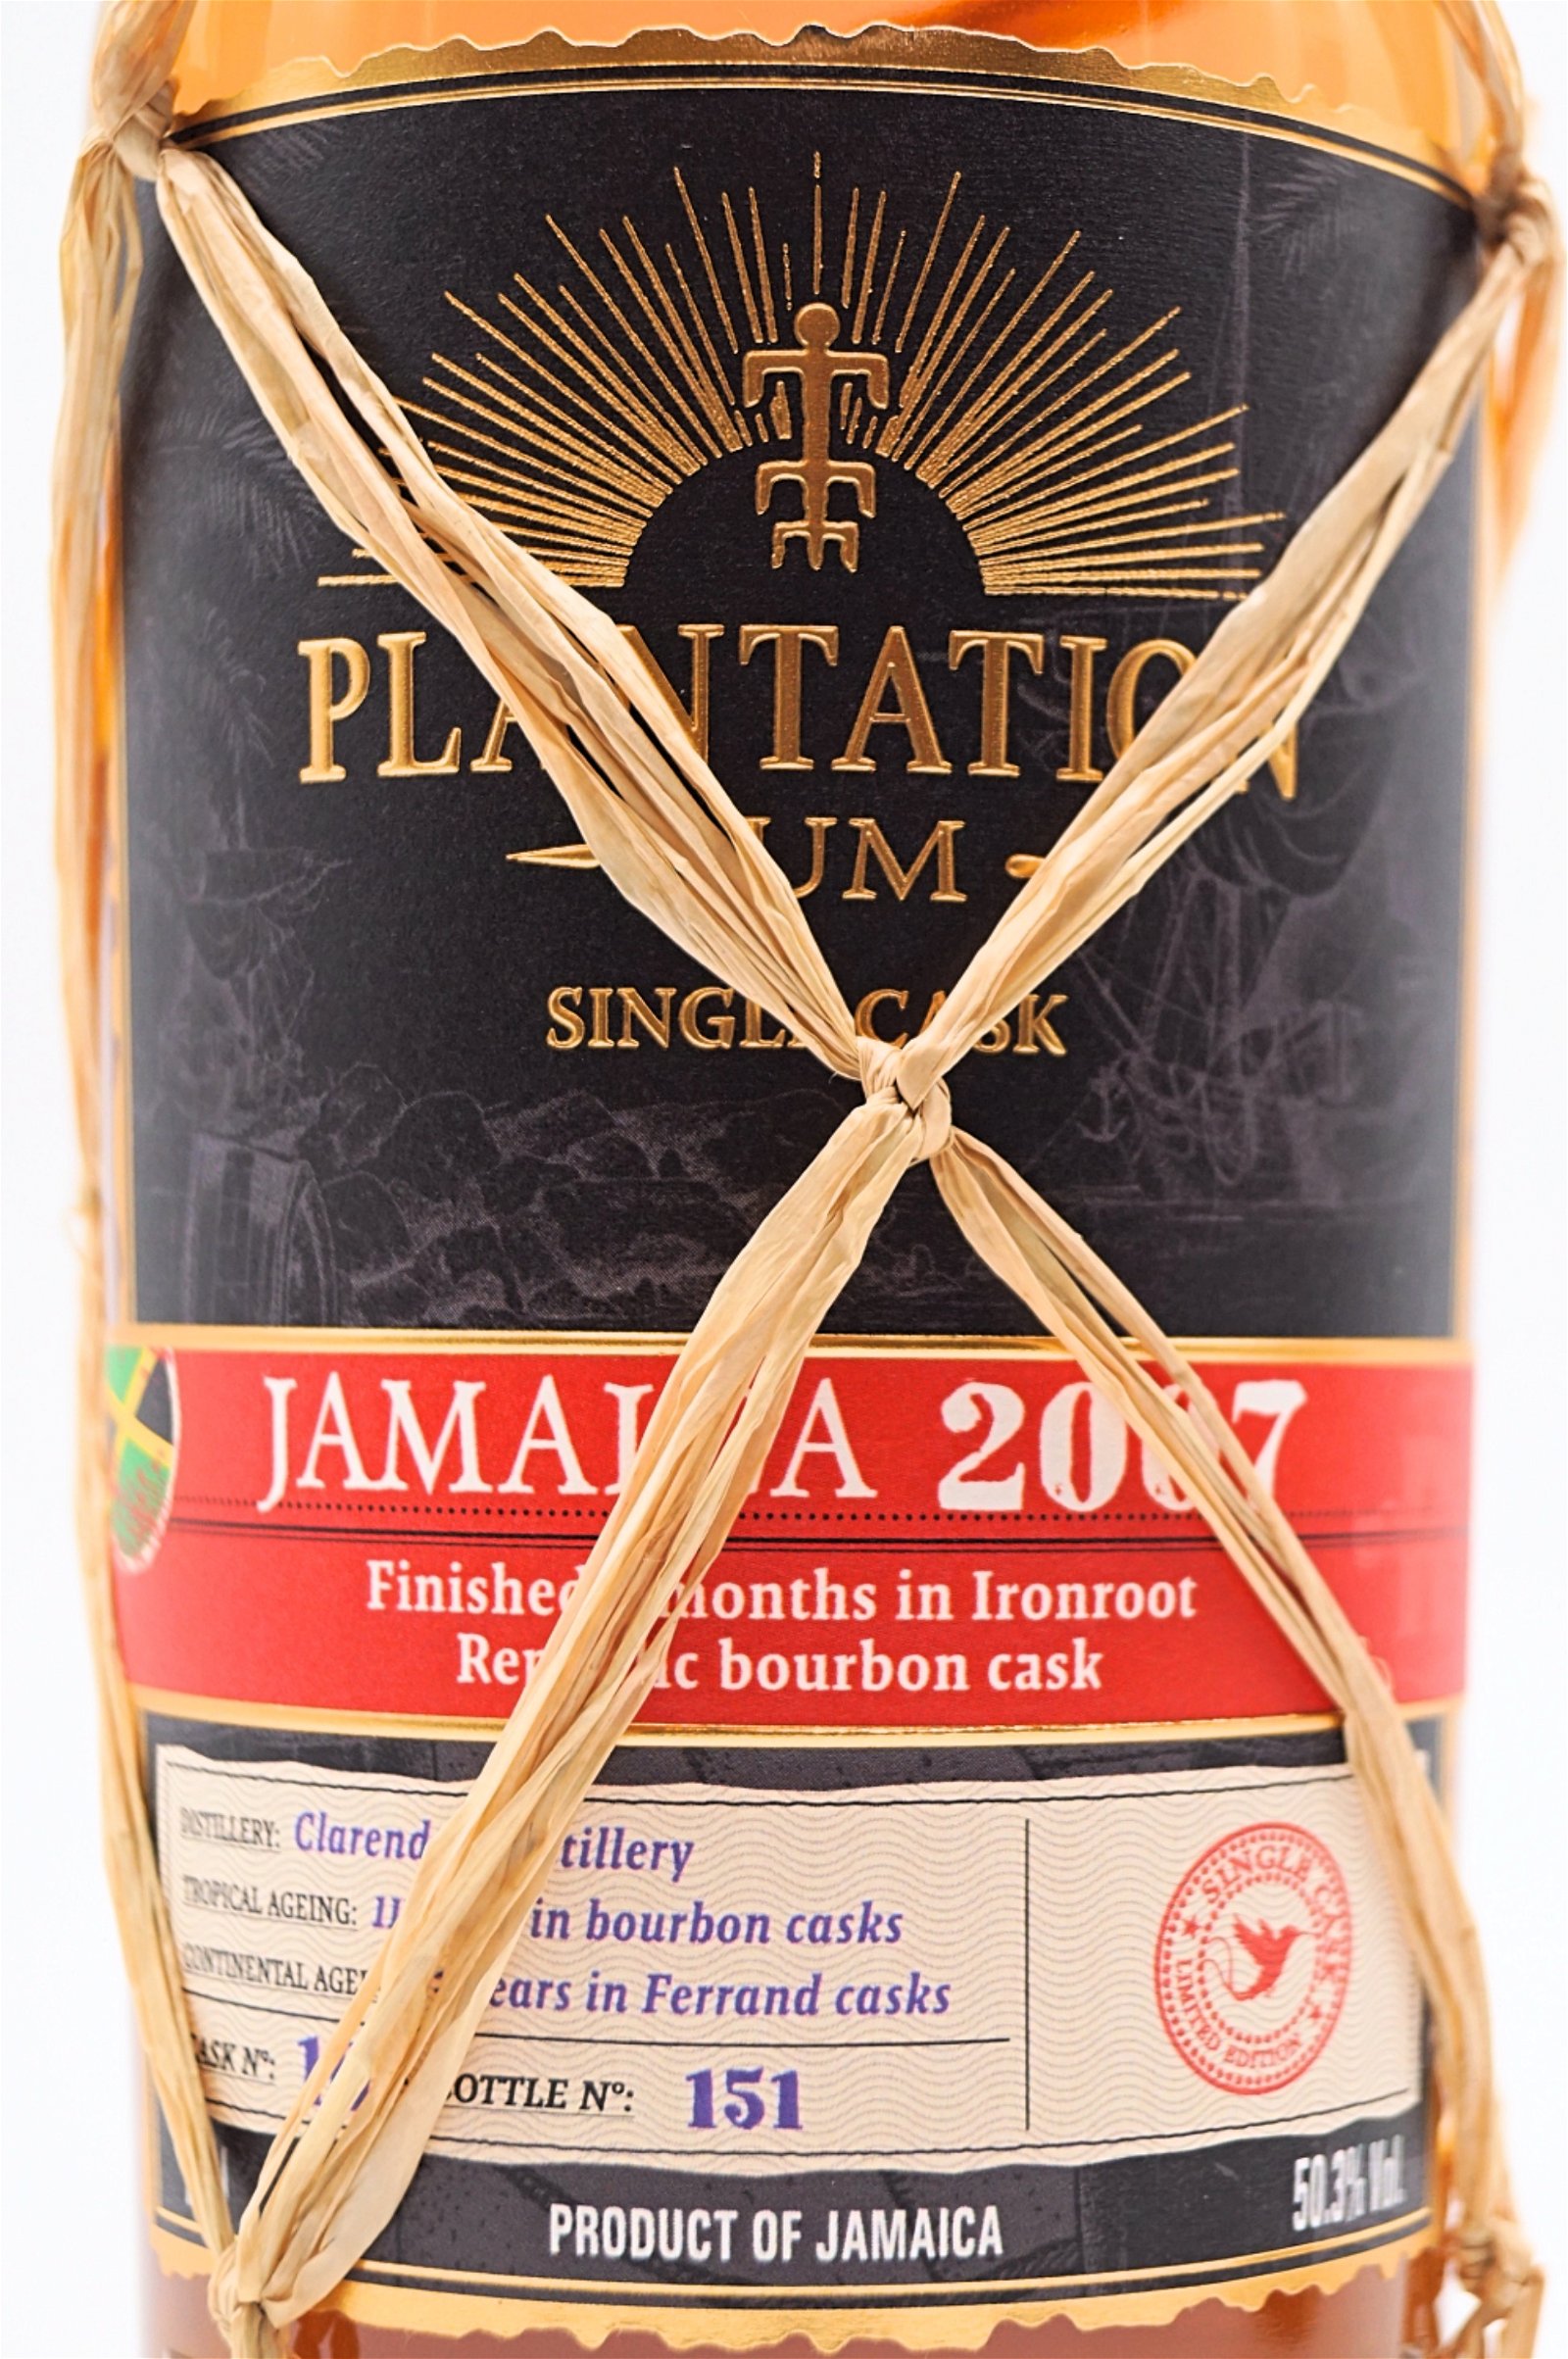 Plantation Rum Jamaica 2007 Ironroot Republic Bourbon Cask Finish